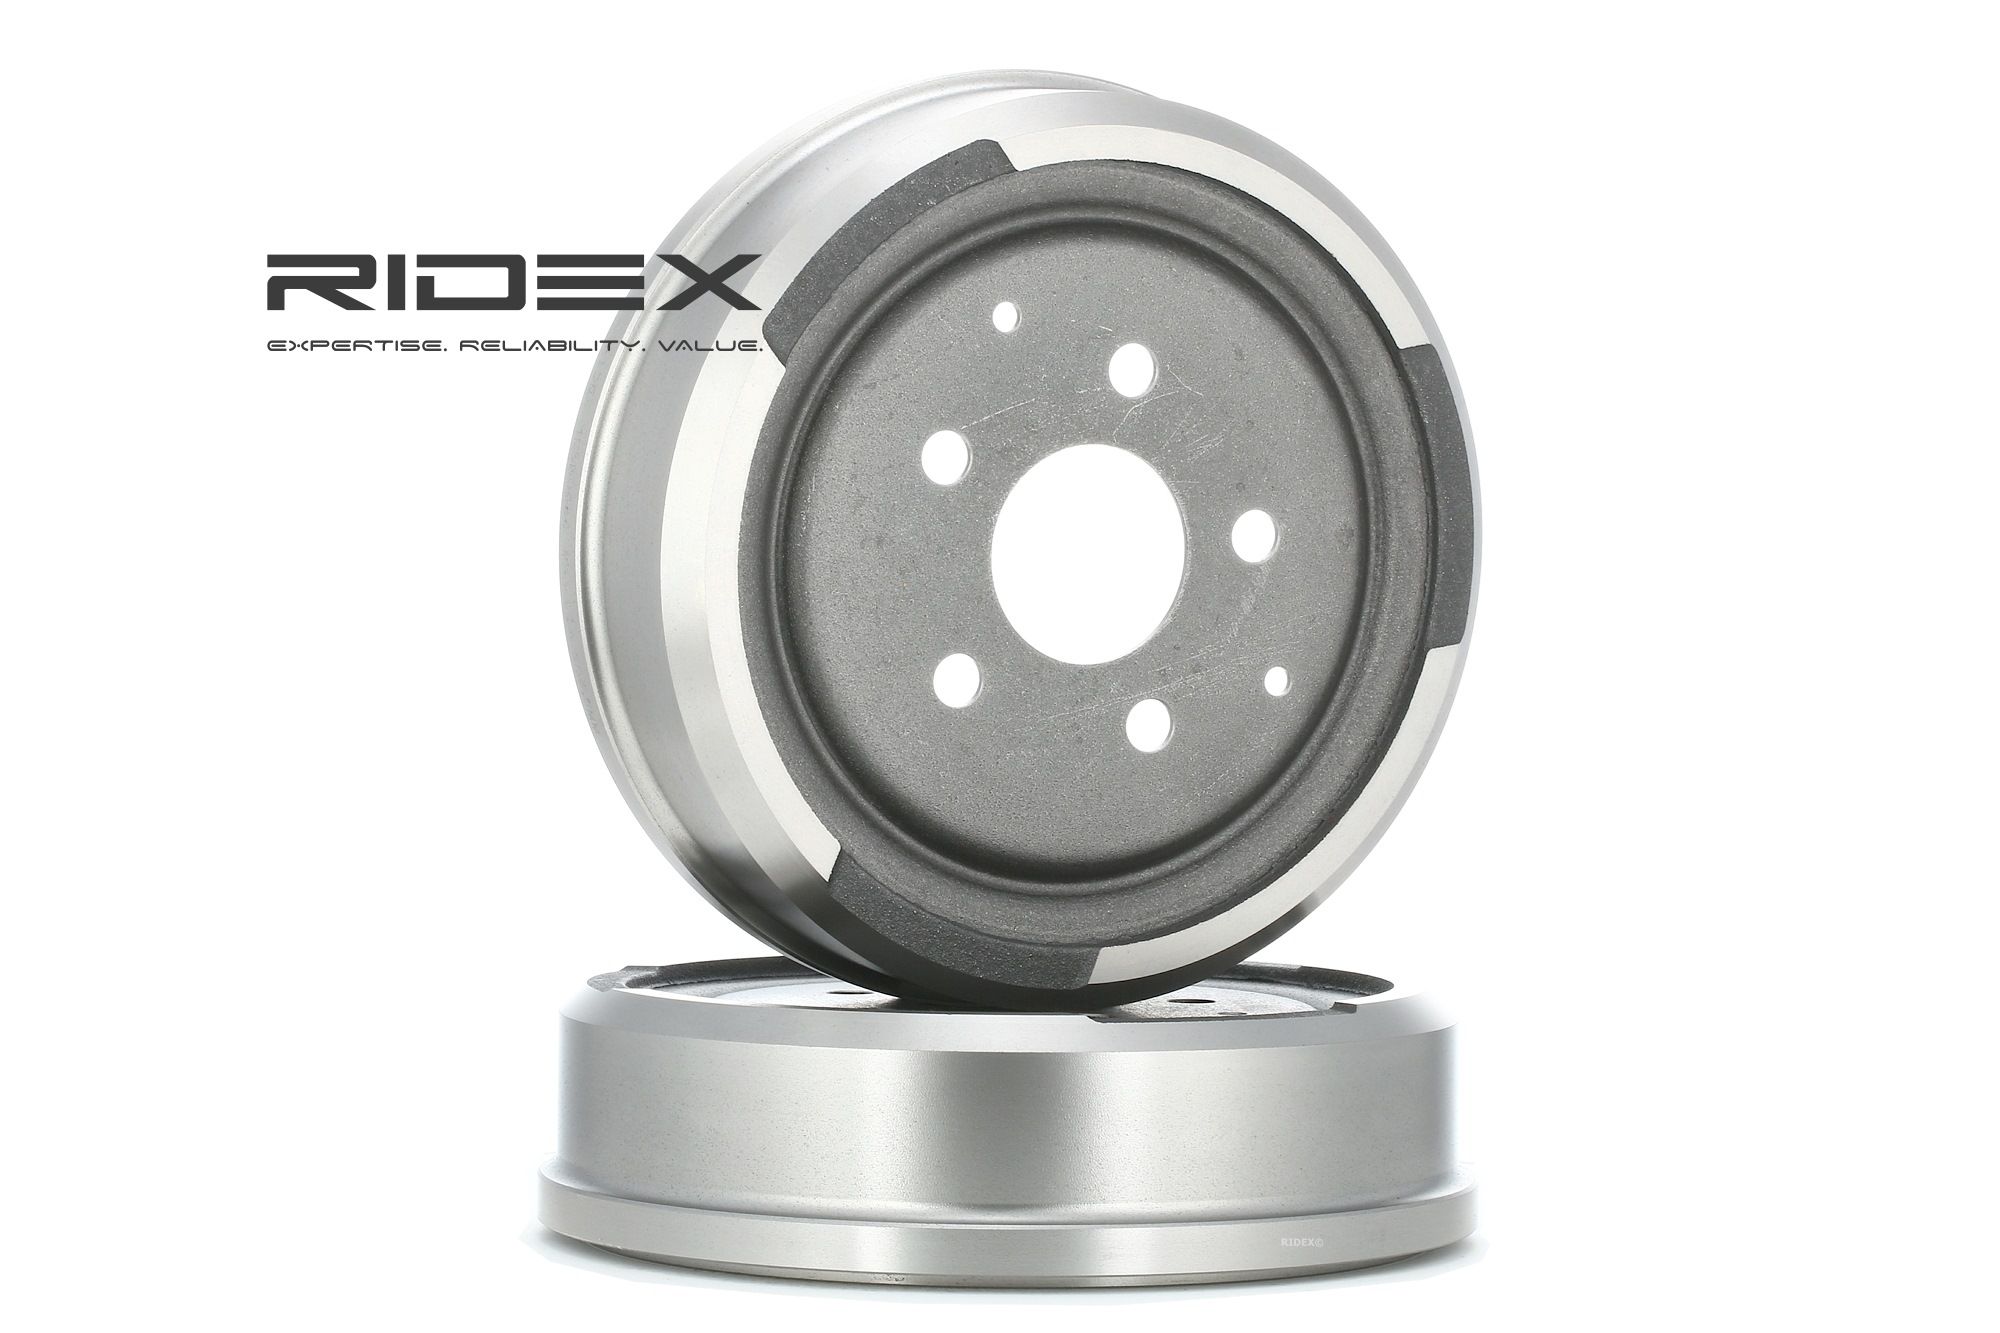 RIDEX 123B0066 originali VOLKSWAGEN Coppia tamburi freno senza anello sensore ABS, senza cuscinetto ruota, senza mozzo portaruota, 286mm, Assale posteriore